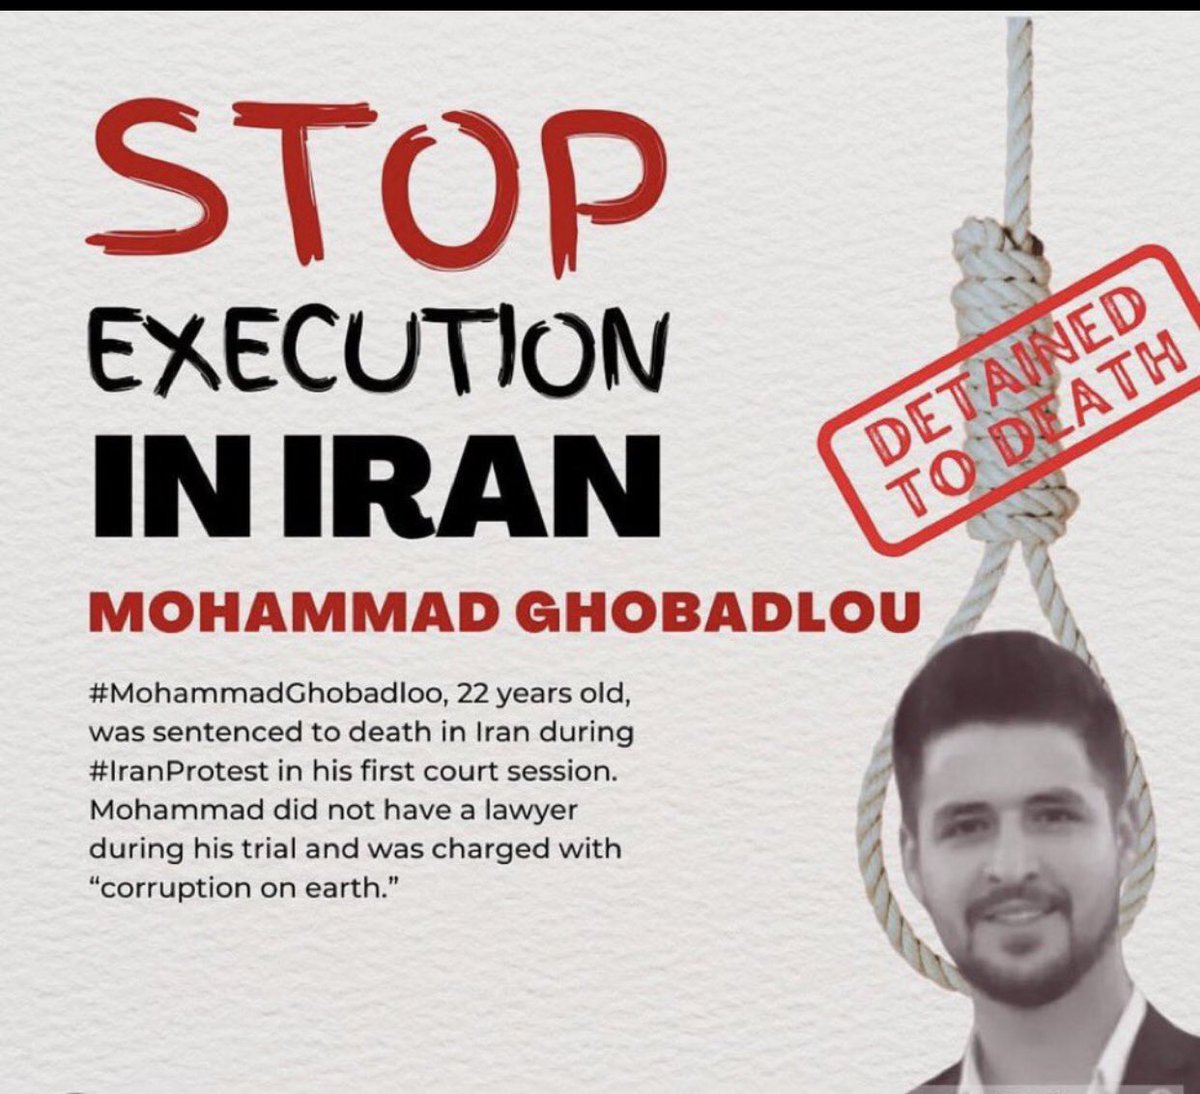 Das islamistische Terrorregime im Iran greift nicht nur Ziele im Ausland an, sondern hat auch wieder damit begonnen, unschuldige junge Menschen im Inland hinzurichten. Der  22jährige #MohammadGhobadloo hatte an Protesten teilgenommen und soll deshalb hingerichtet werden.